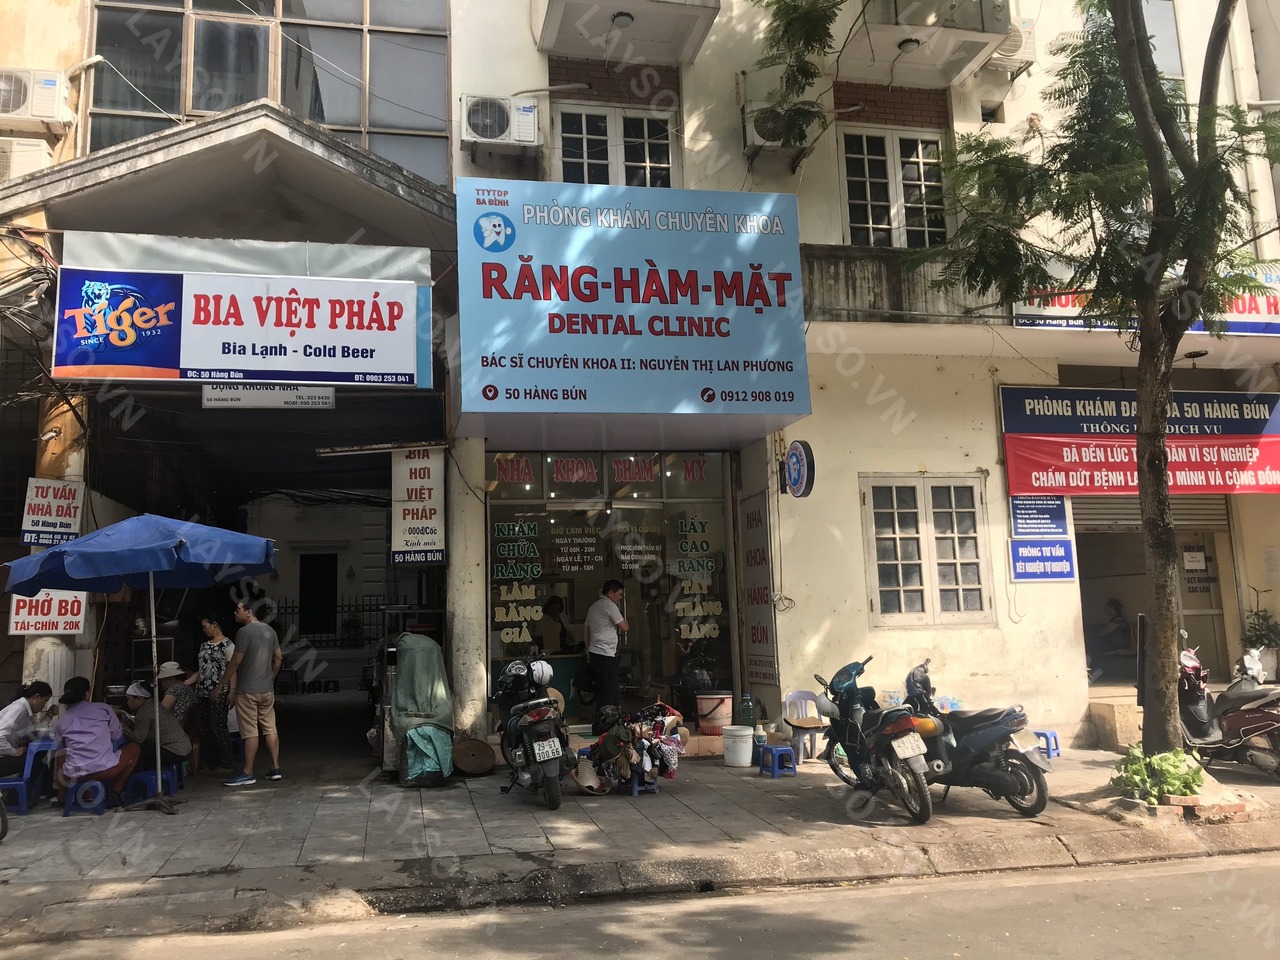 Phòng khám chuyên khoa Răng Hàm Mặt - BS.CKII Nguyễn Thị Lan Phương